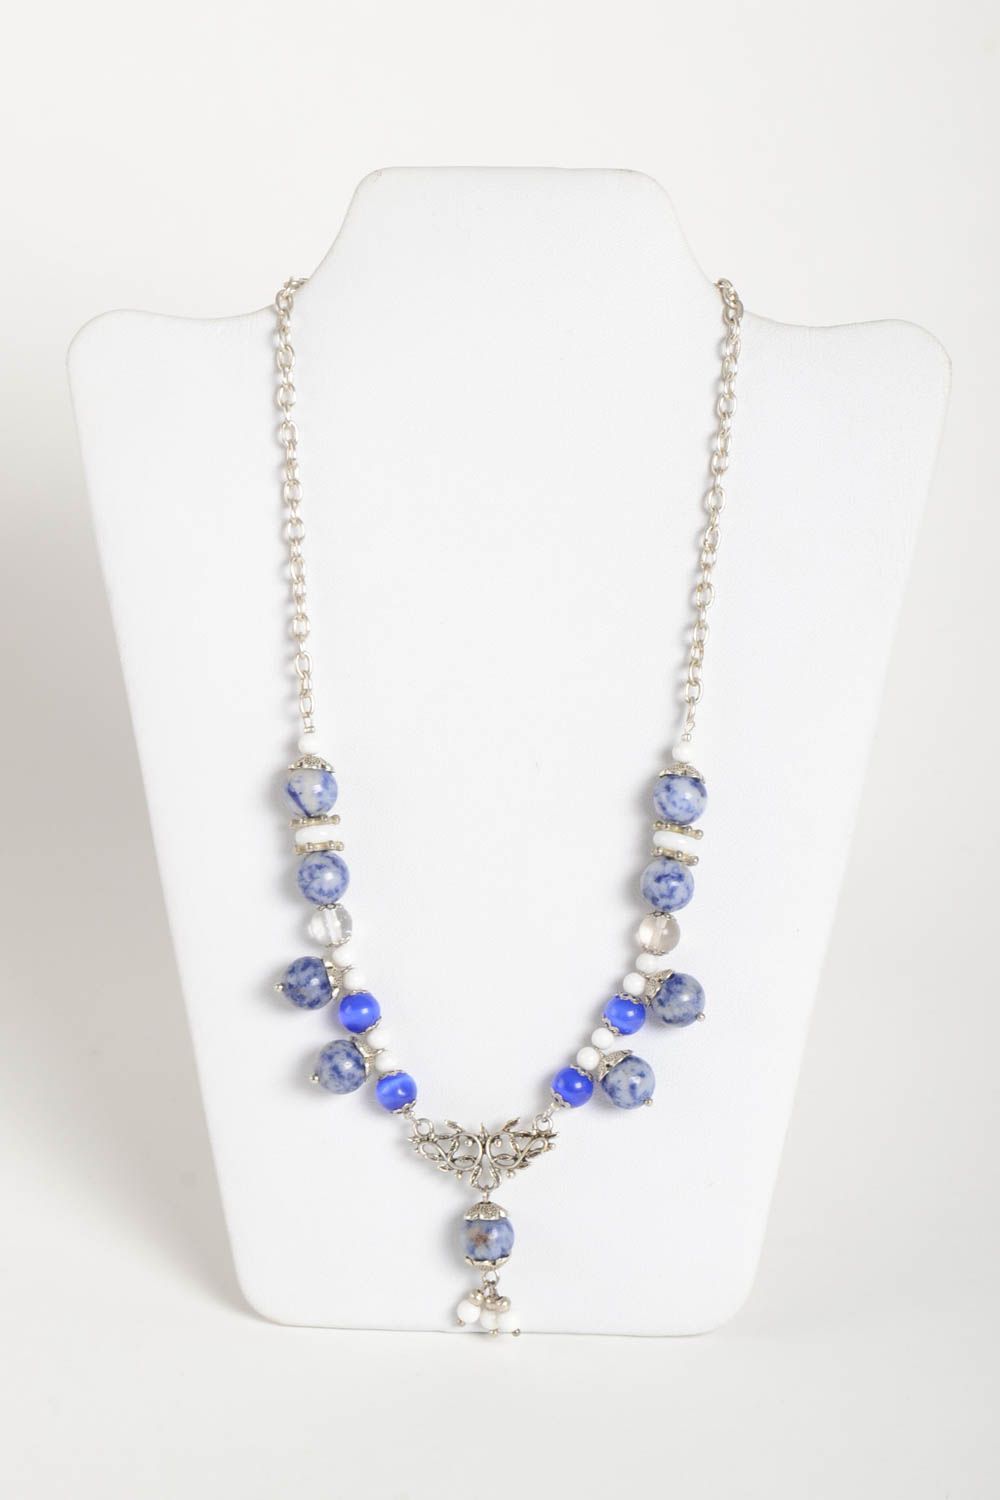 Handmade elegant blue necklace unusual stylish necklace designer jewelry photo 1